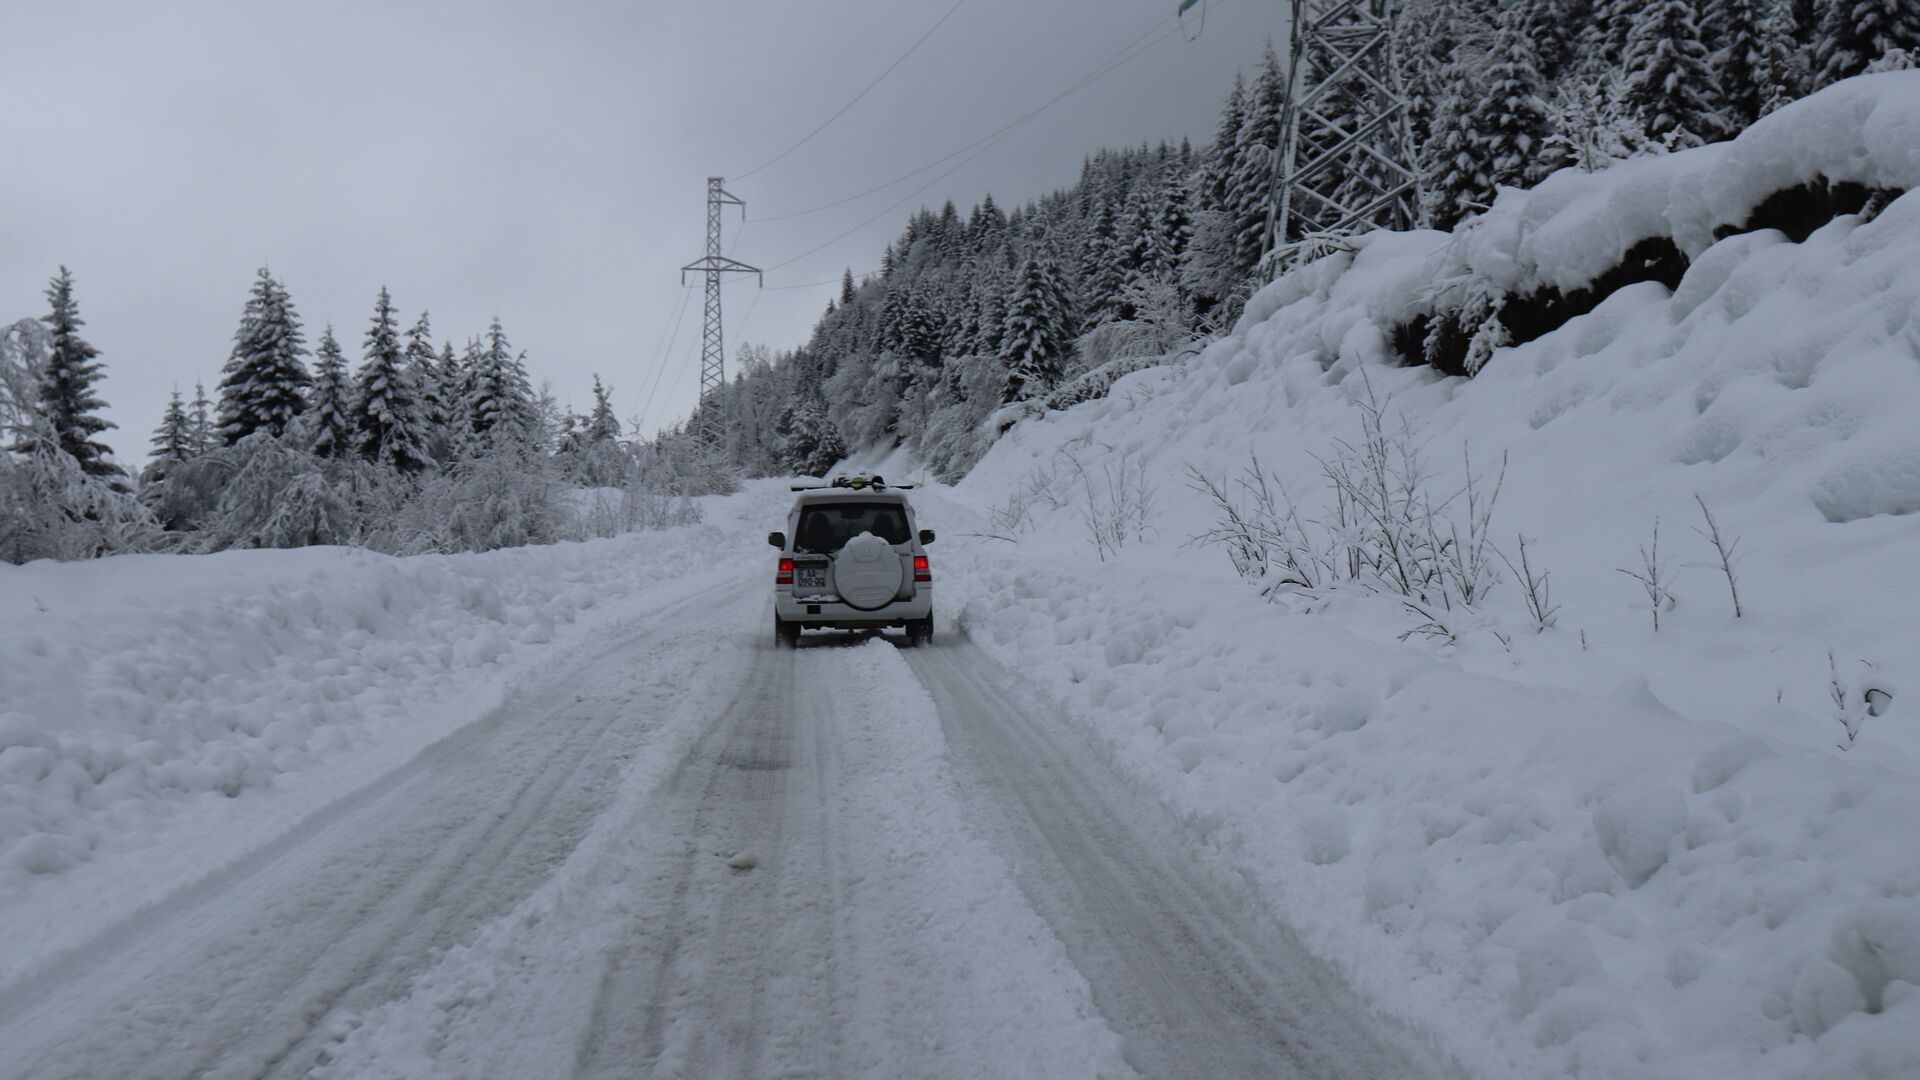 Горная дорога в снегу - машина едет среди снежных сугробов - Sputnik Грузия, 1920, 28.11.2021